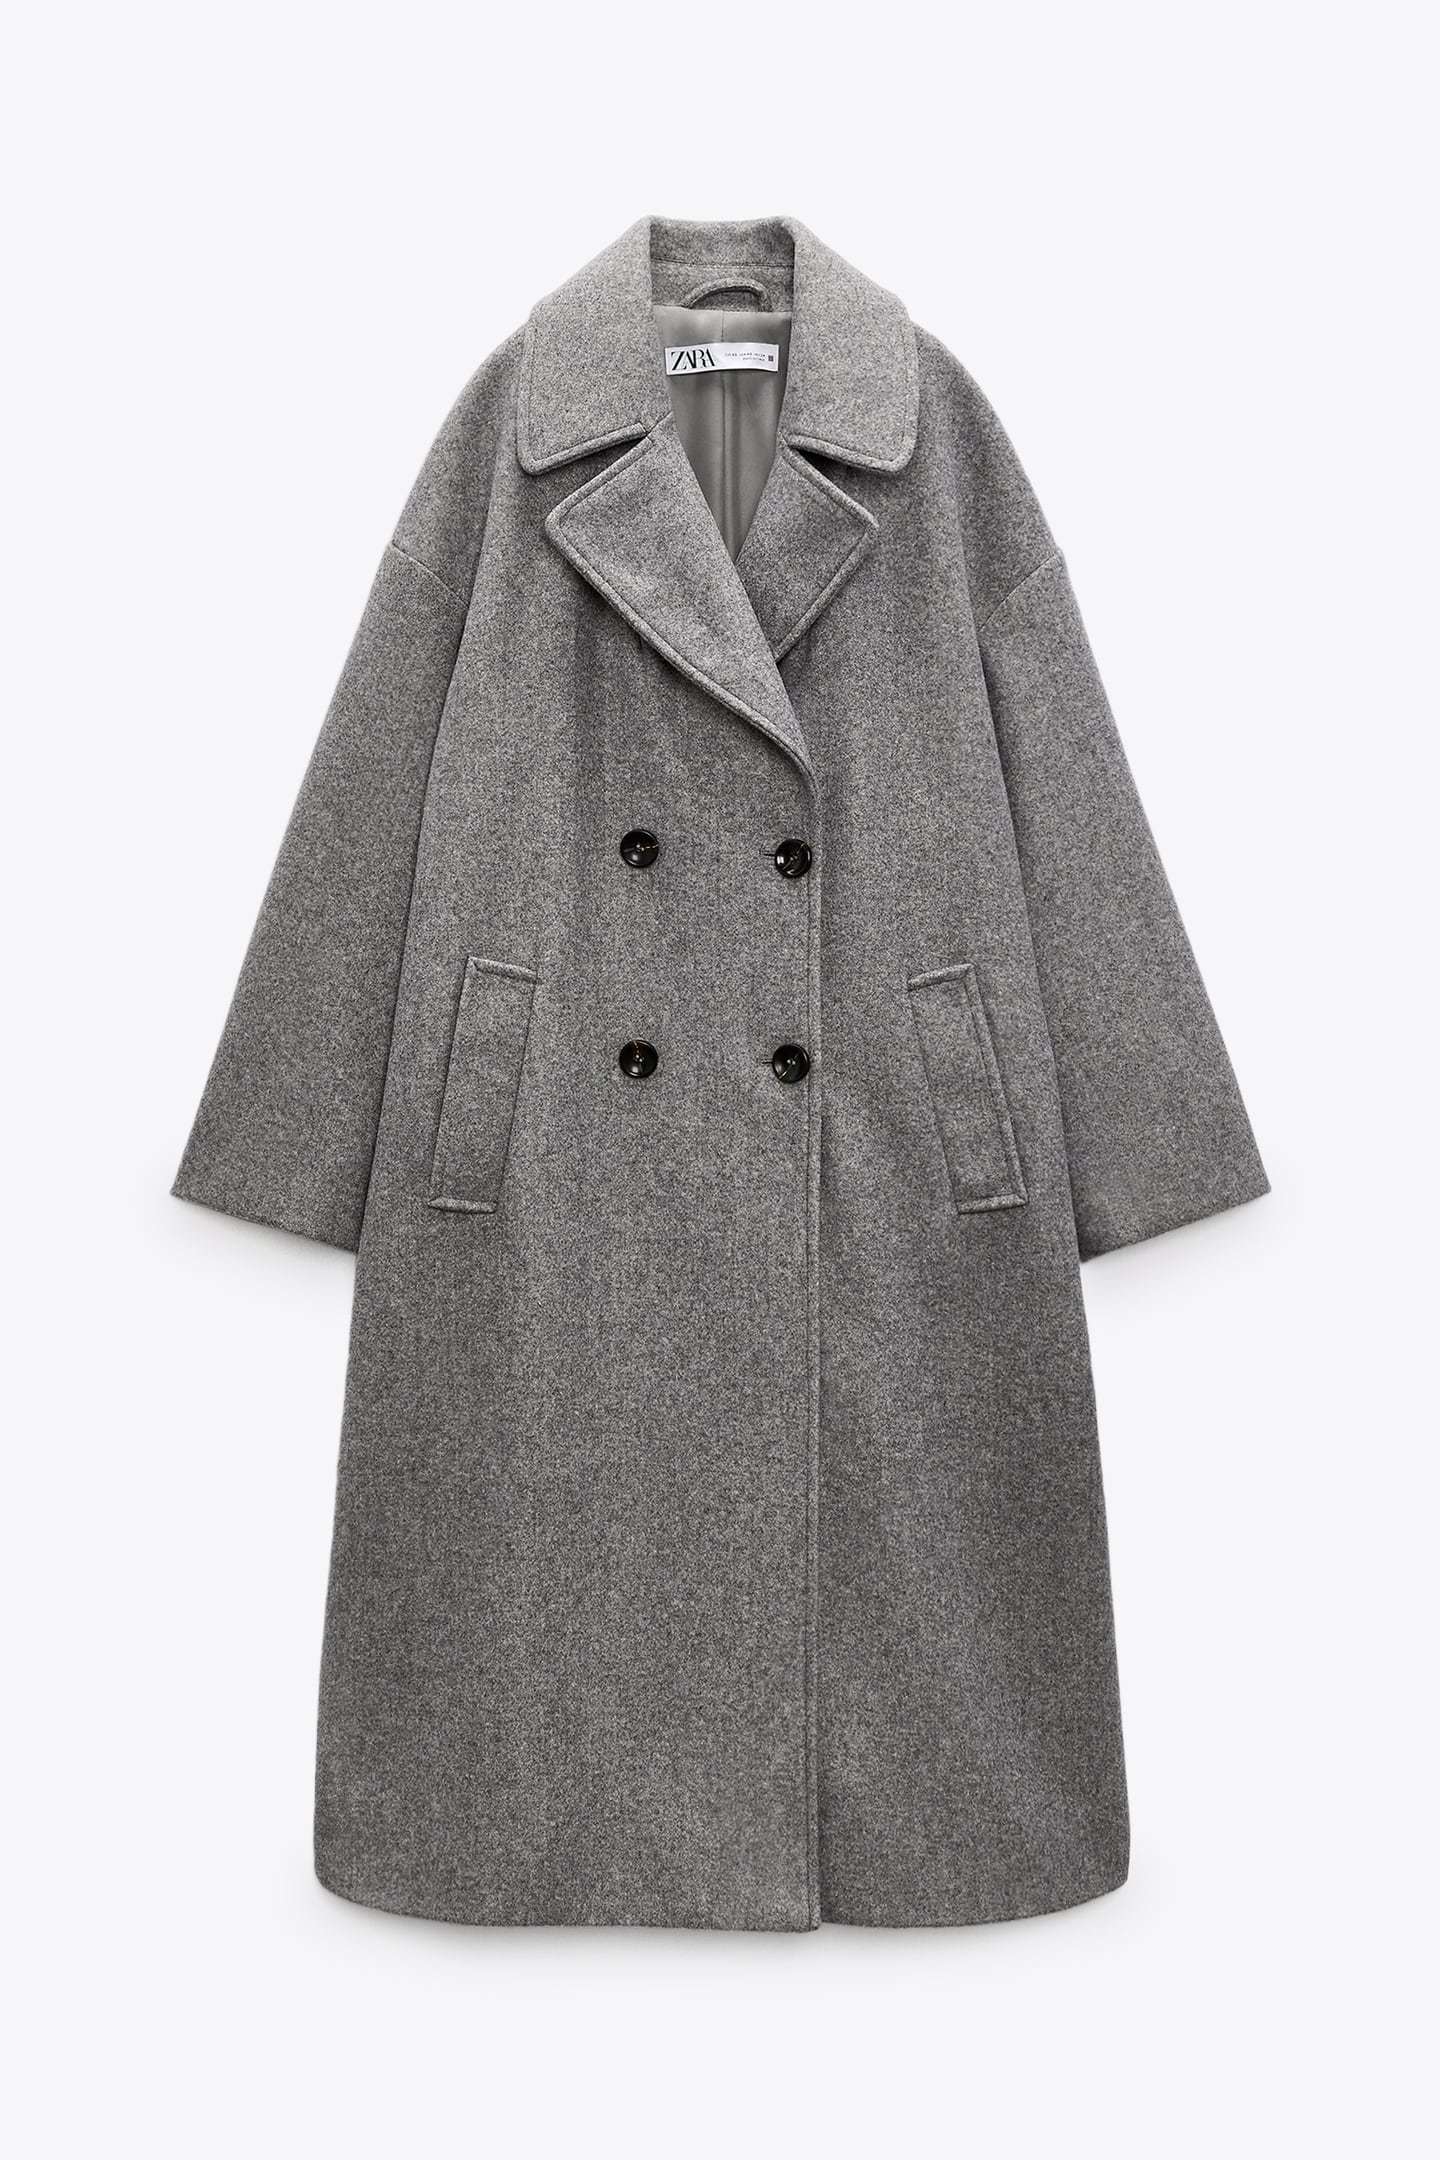 El abrigo de Zara (y algunos más) para comprarte en rebajas | Telva.com